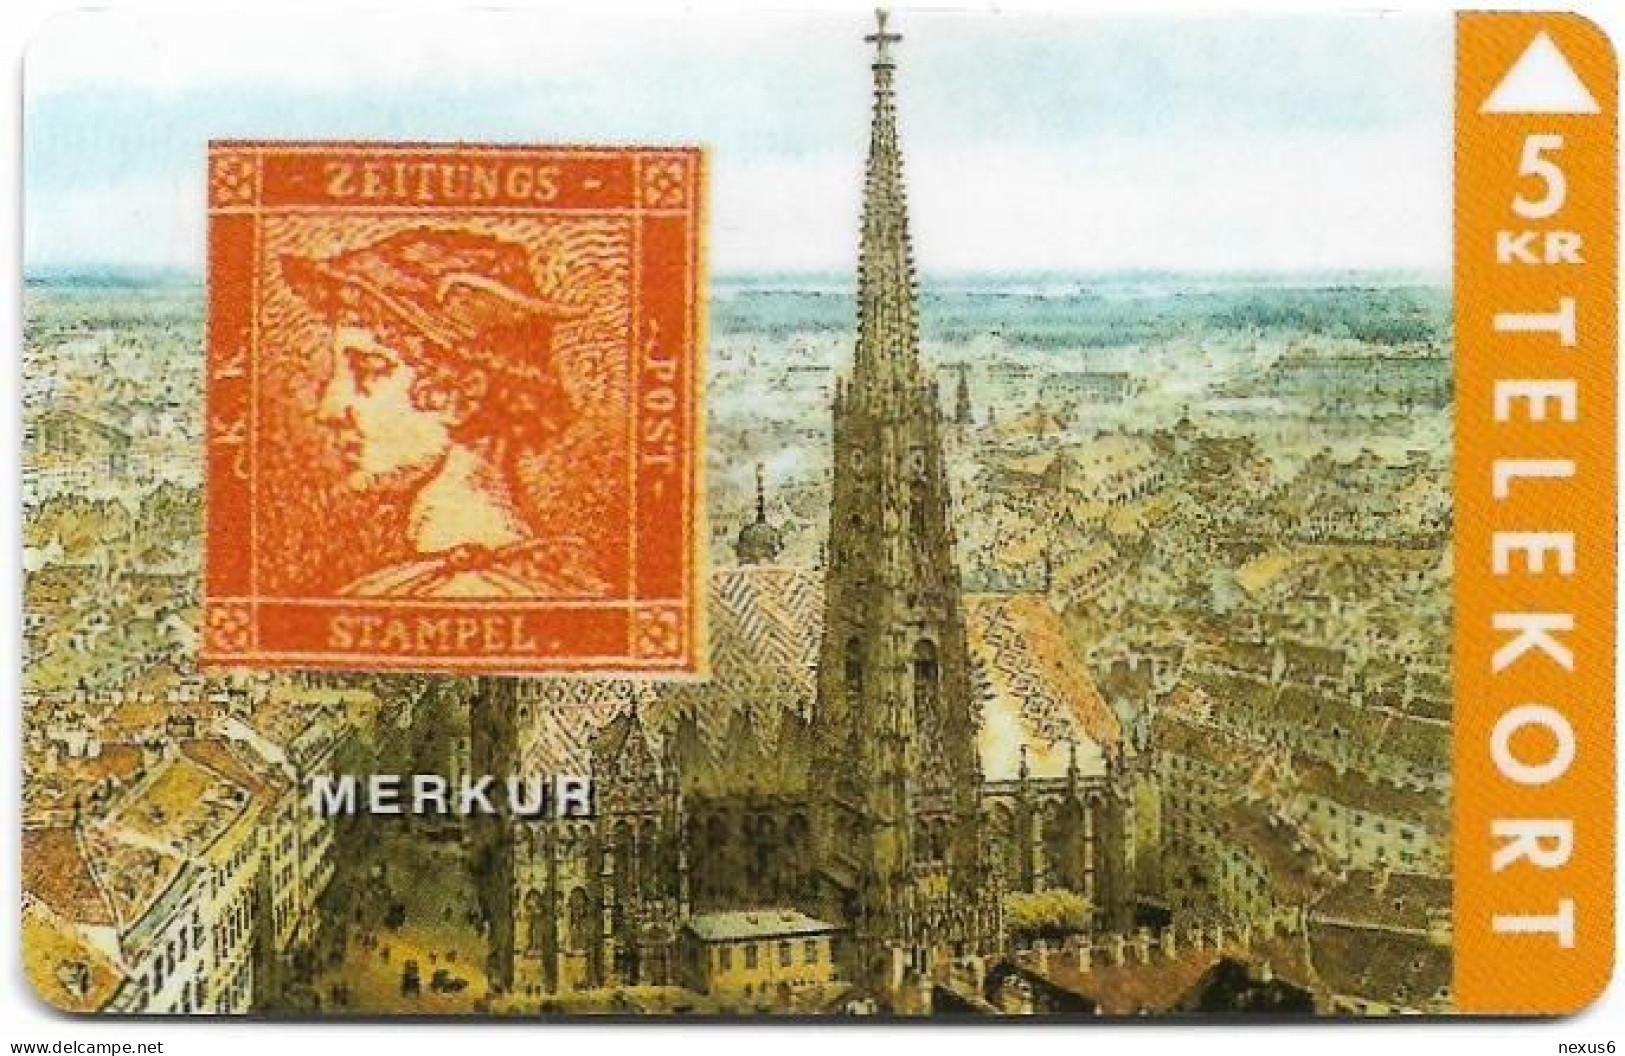 Denmark - TS - Rare Stamps - Merkur - TDTP044 - 04.1994, 5Kr, 2.000ex, Used - Danemark